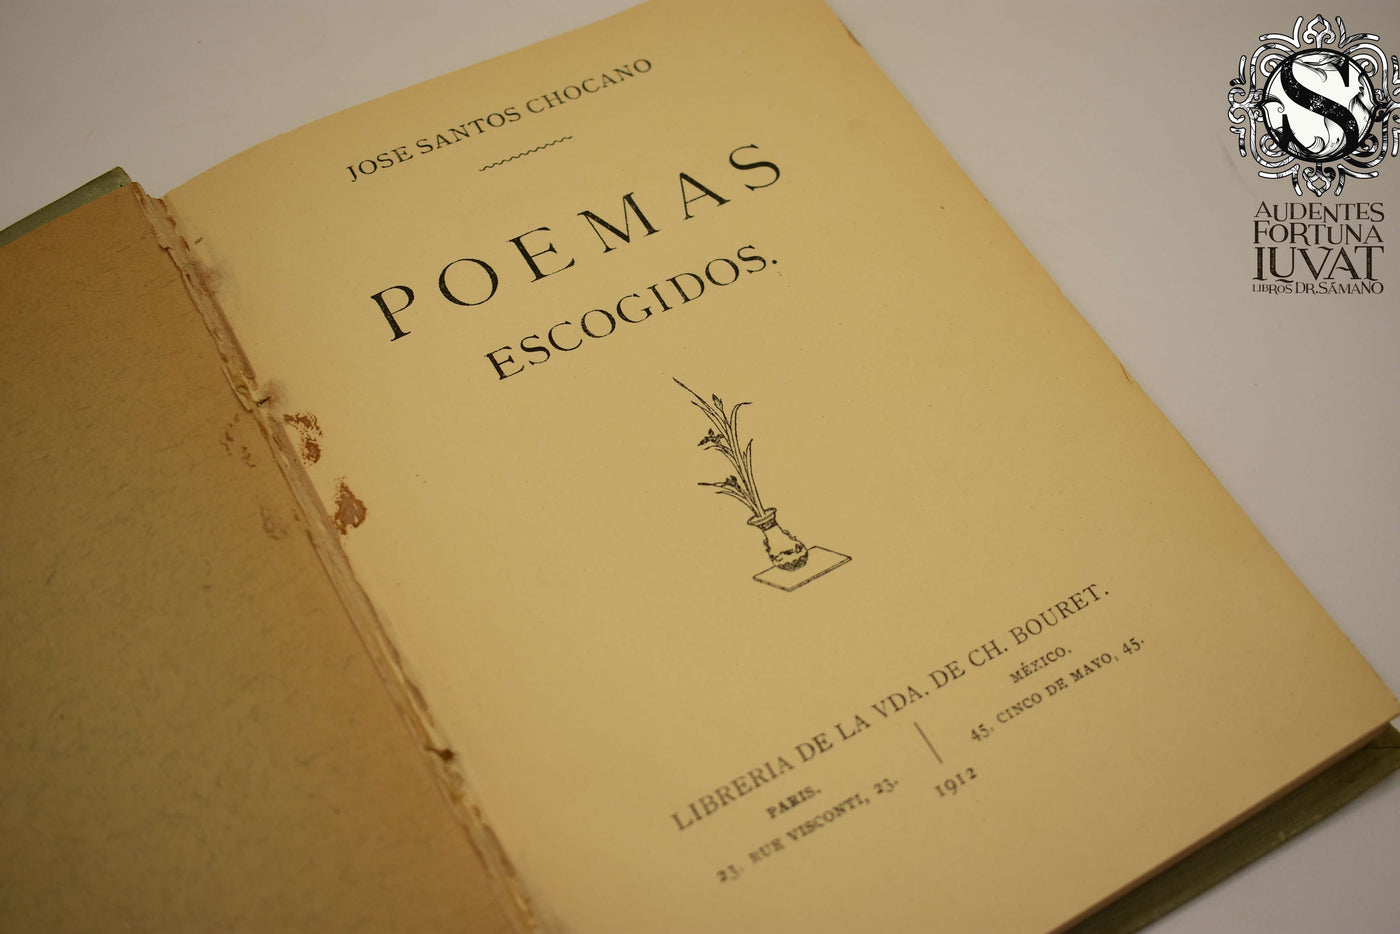 Poemas Escogidos - JOSÉ SANTOS CHOCANO